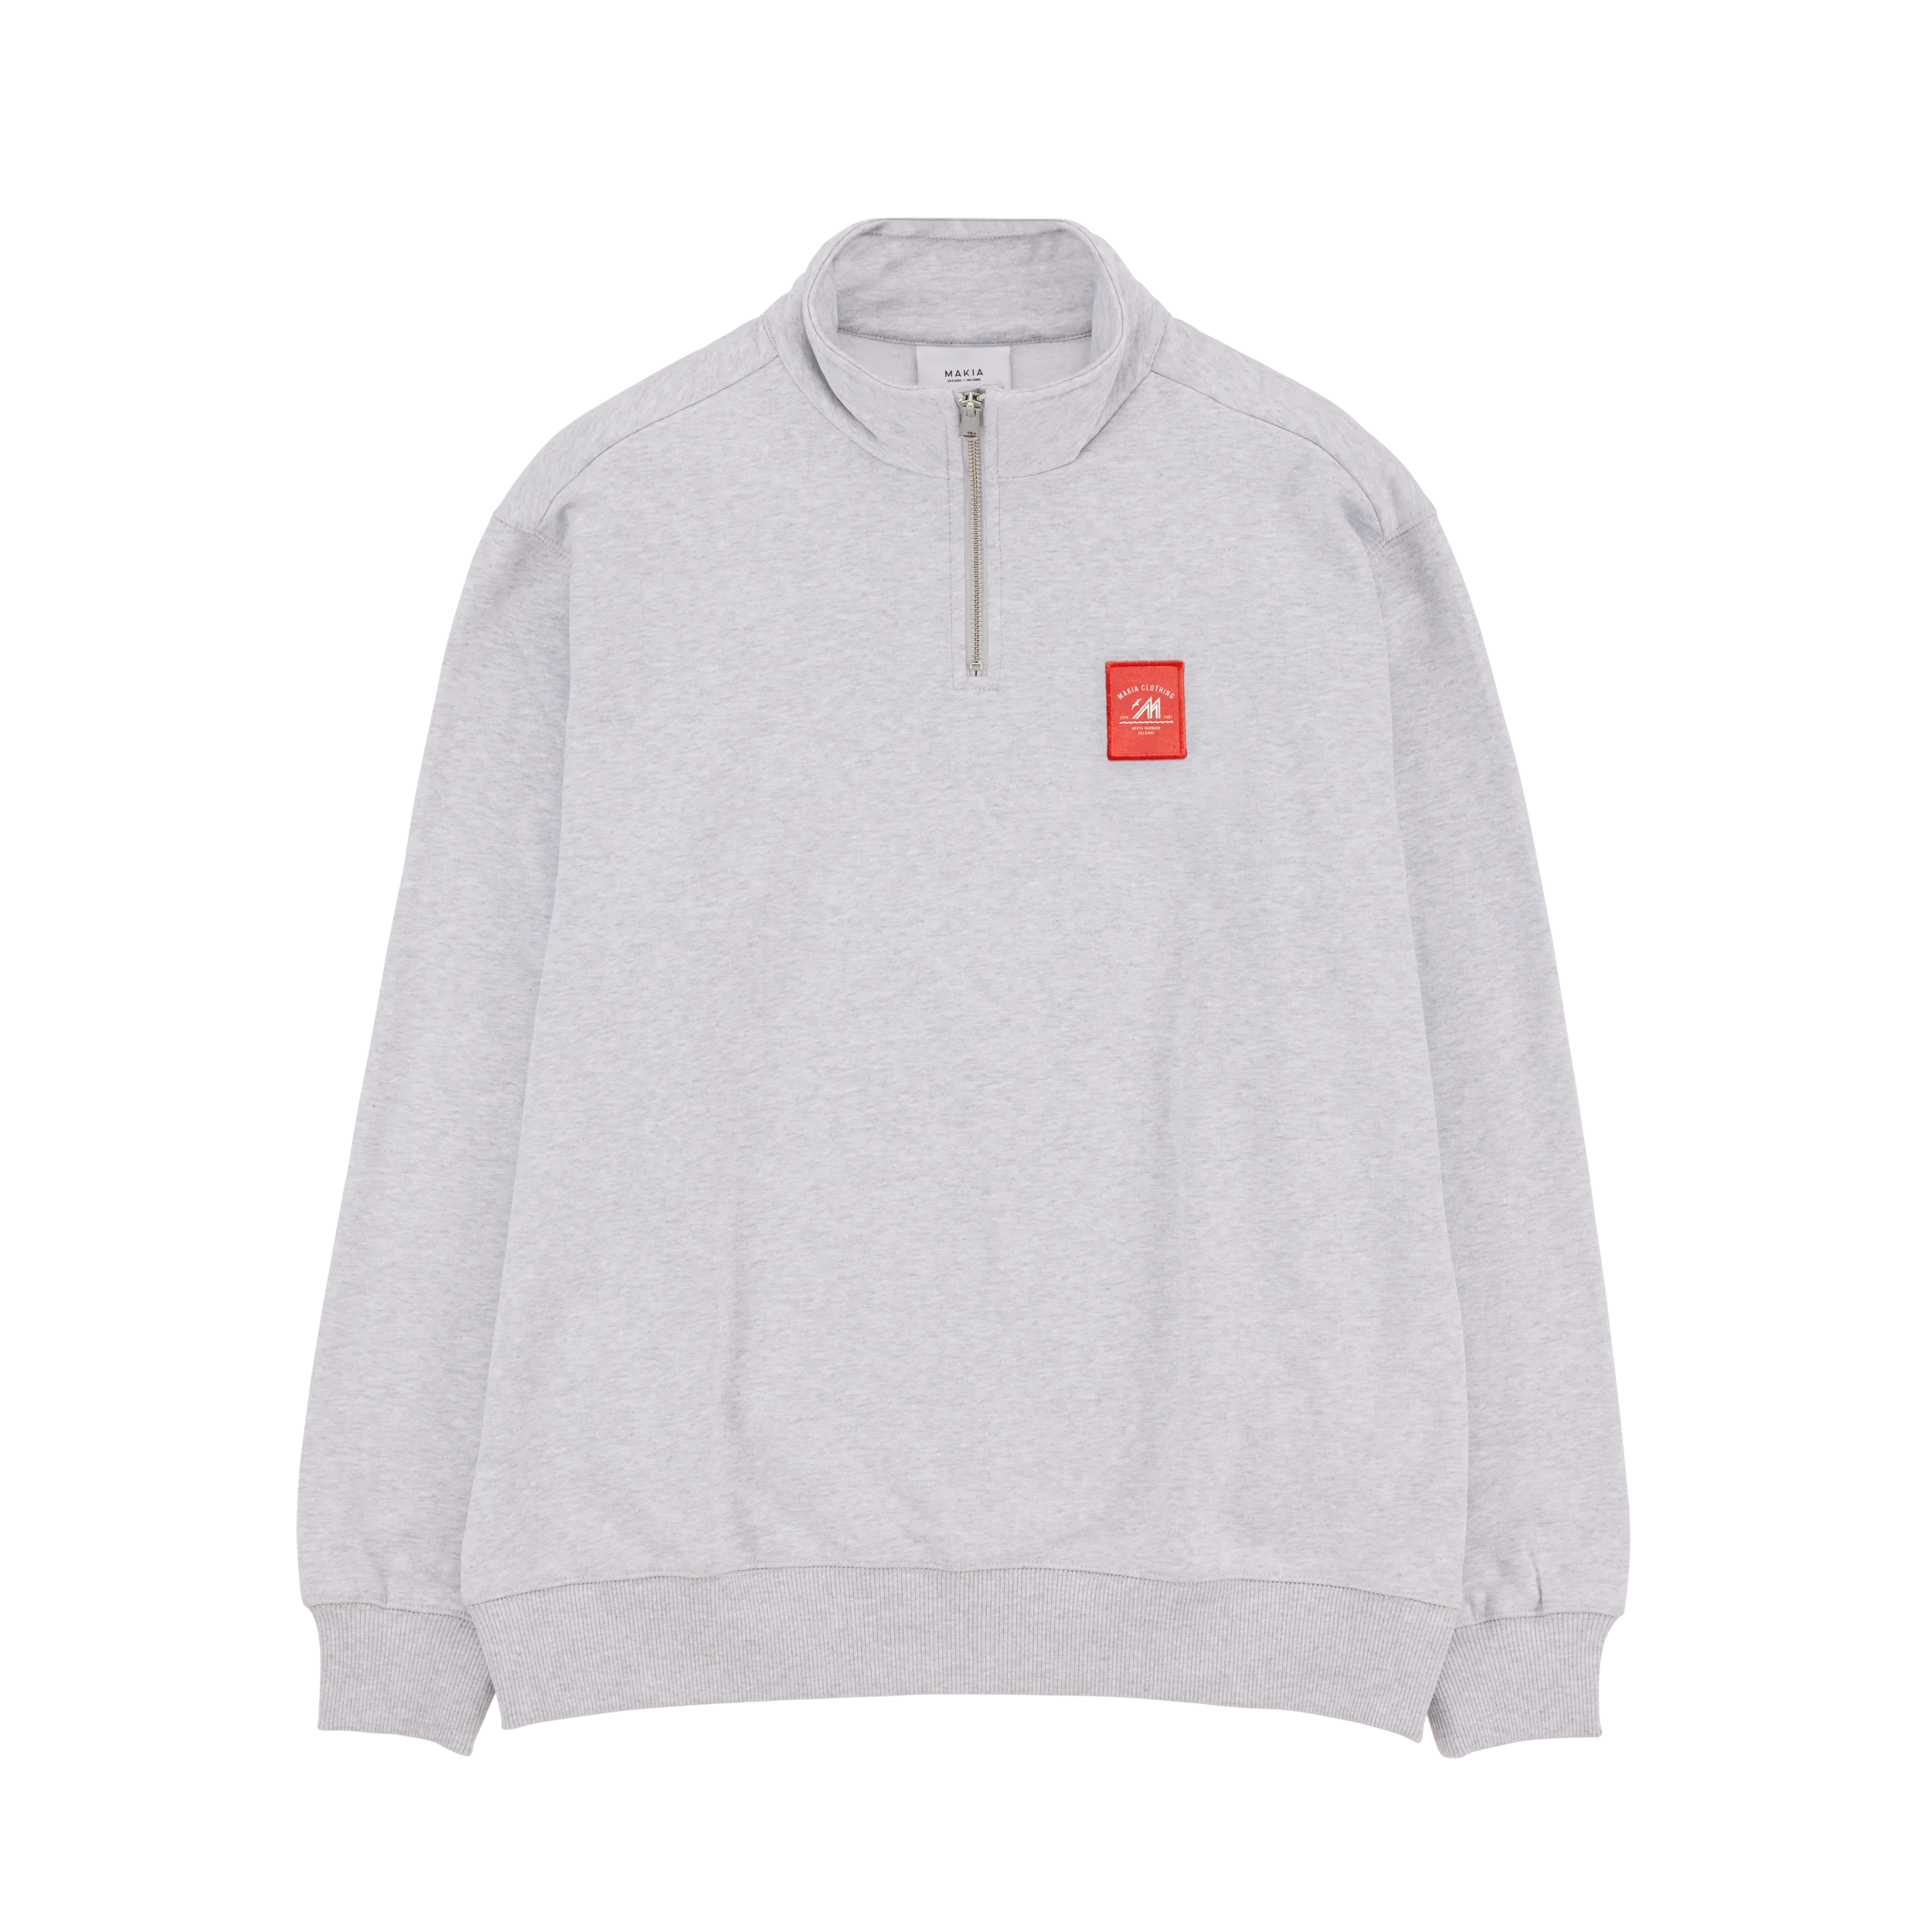 Light grey haft zip sweatshirt with small red Merenkävijät label on chest